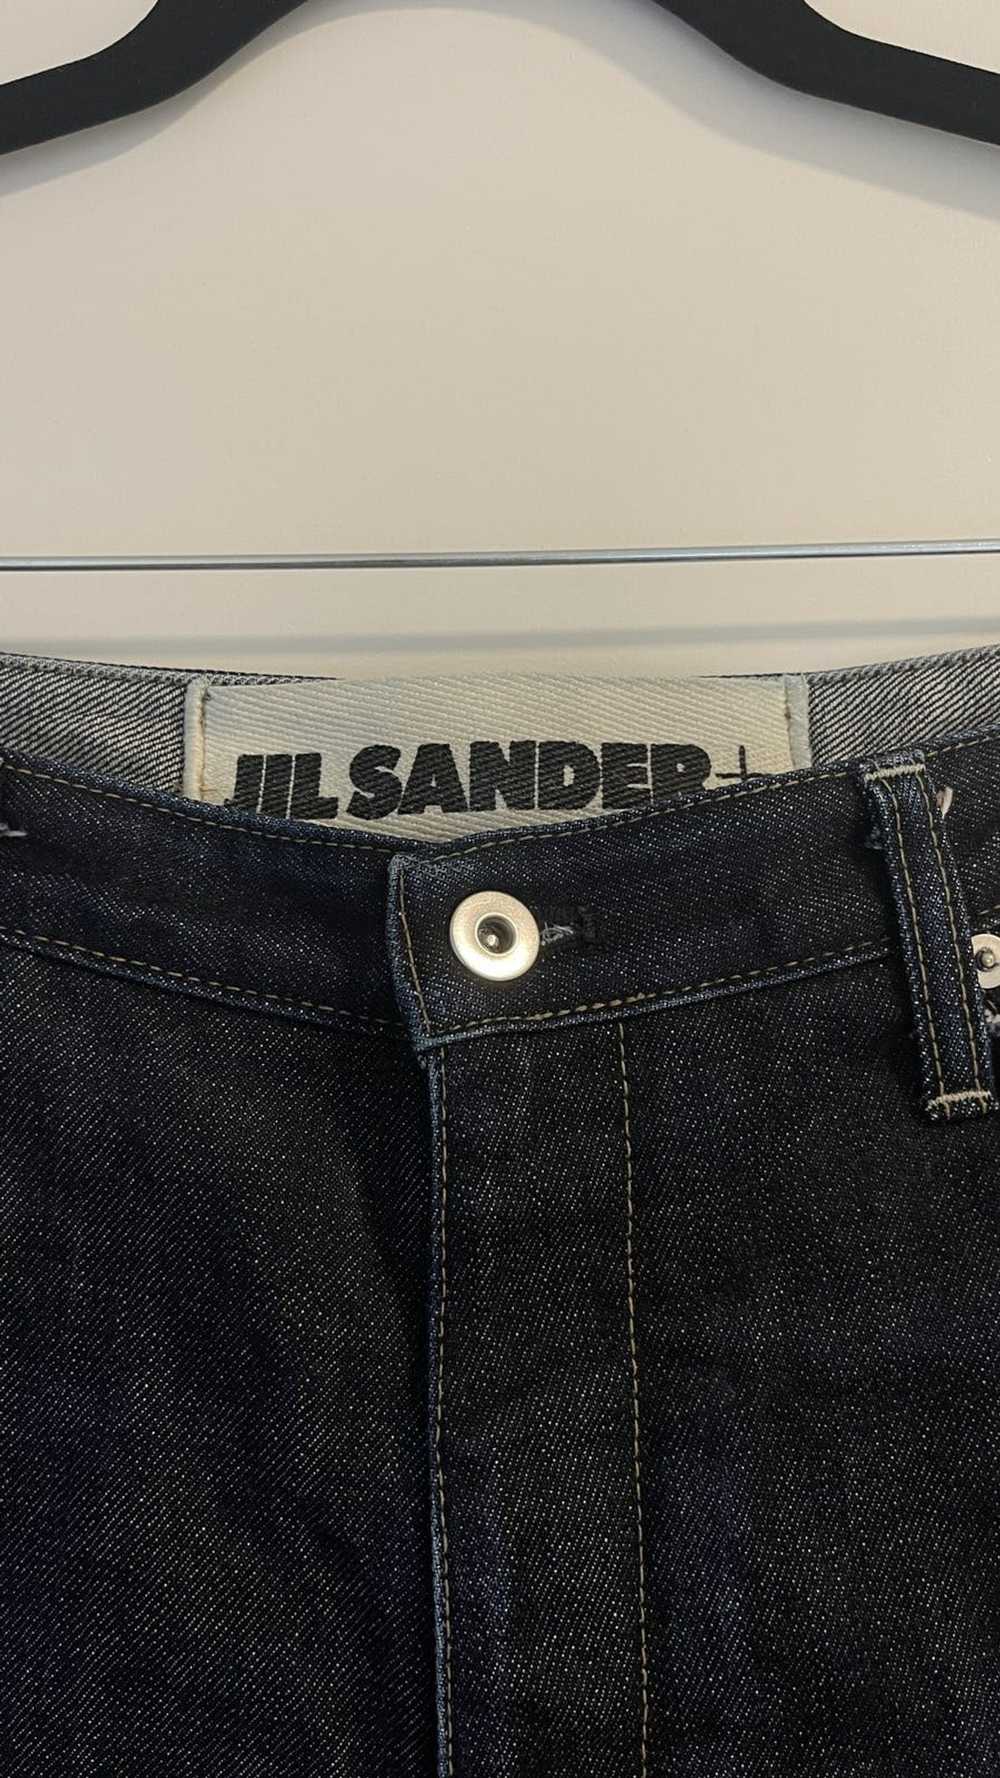 Jil Sander JIL SANDER Japanese Denim Jeans - image 3